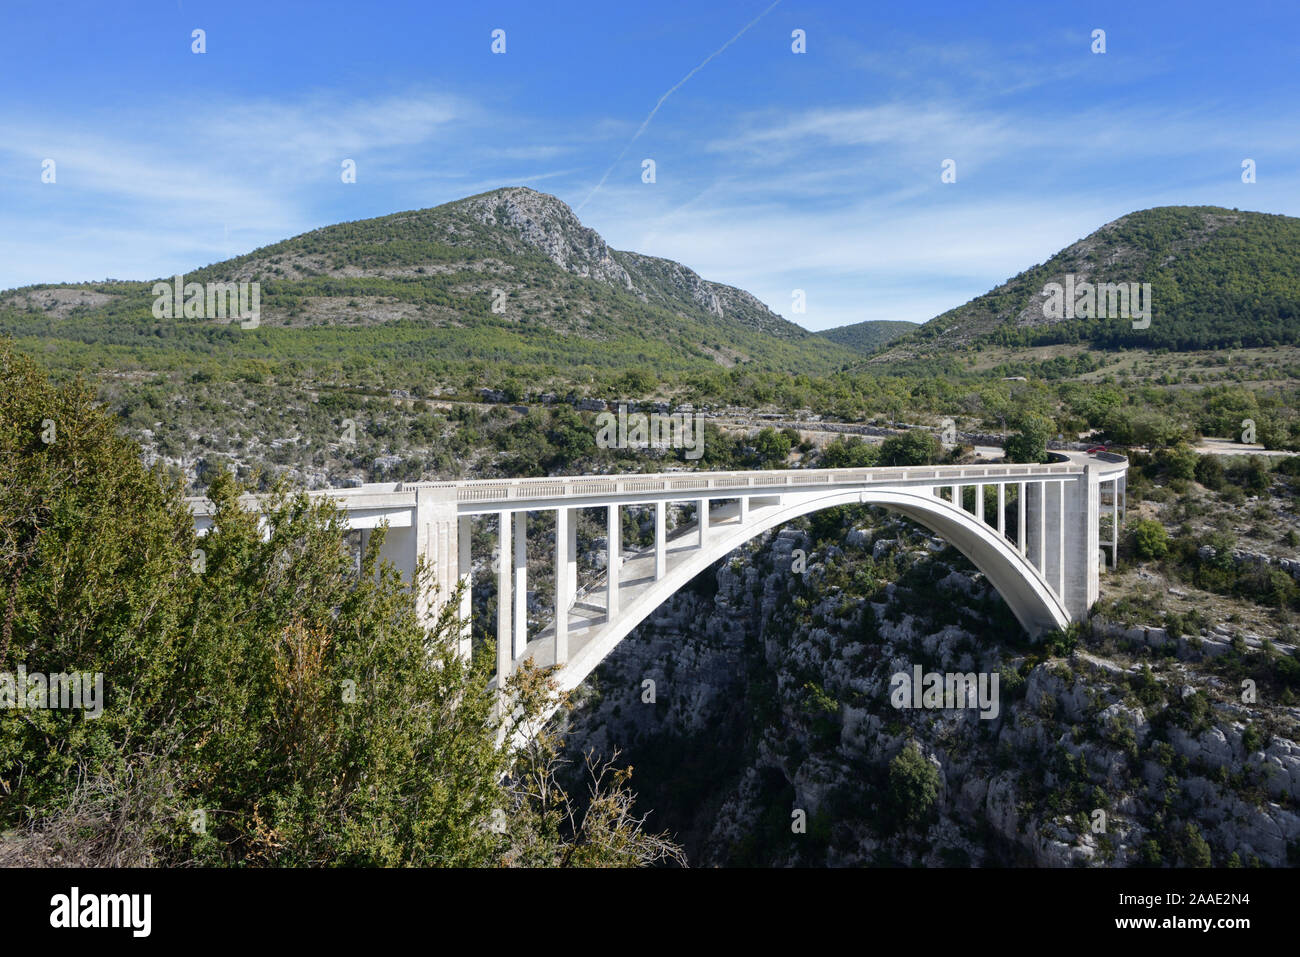 Solo Span de hormigón armado, puente Pont de l'Artuby o Pont de Chaulière (1940) y los picos o cumbres del Verdon Gorge Park, Var Provence Francia Foto de stock